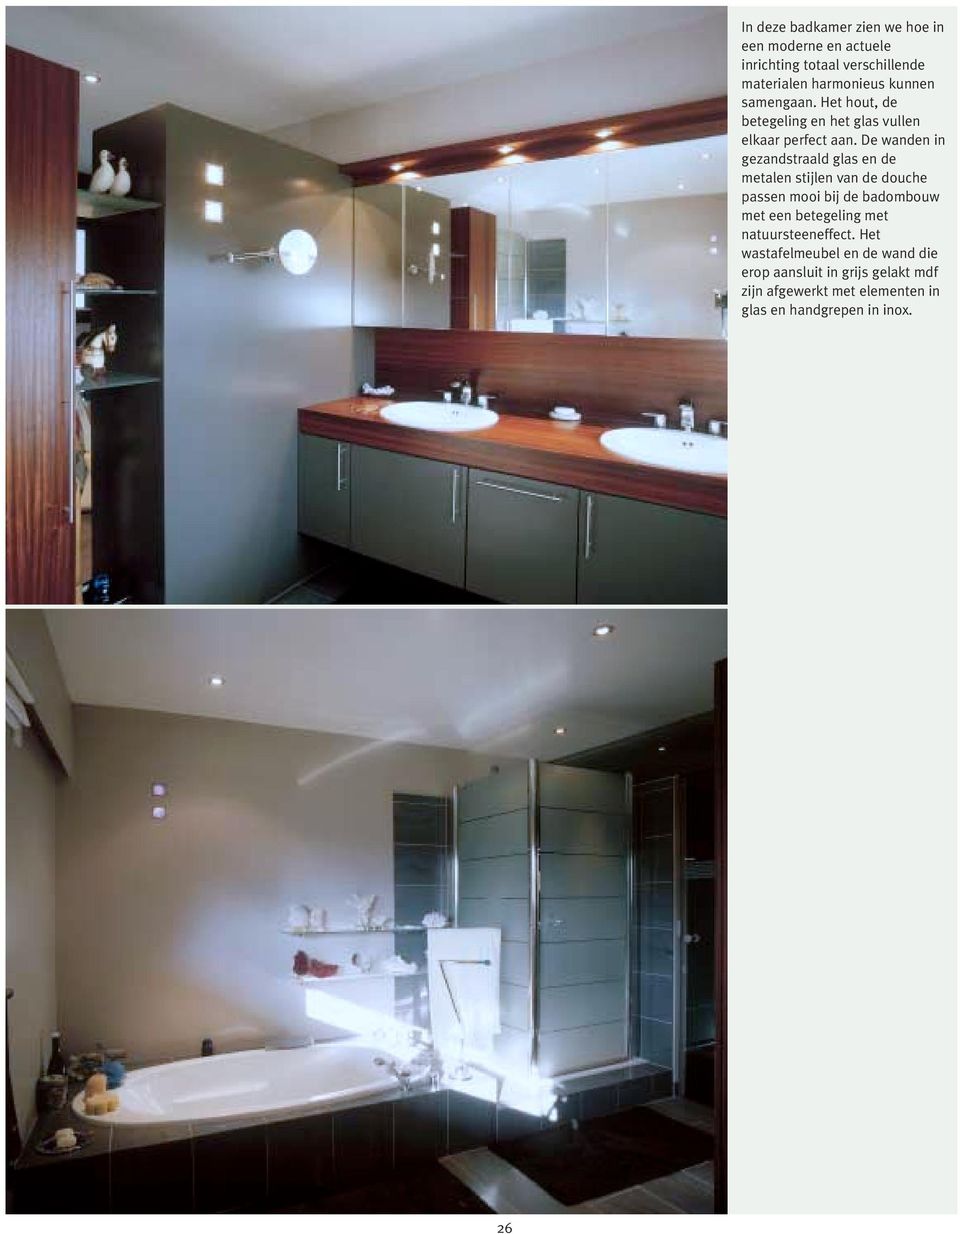 De wanden in gezandstraald glas en de metalen stijlen van de douche passen mooi bij de badombouw met een